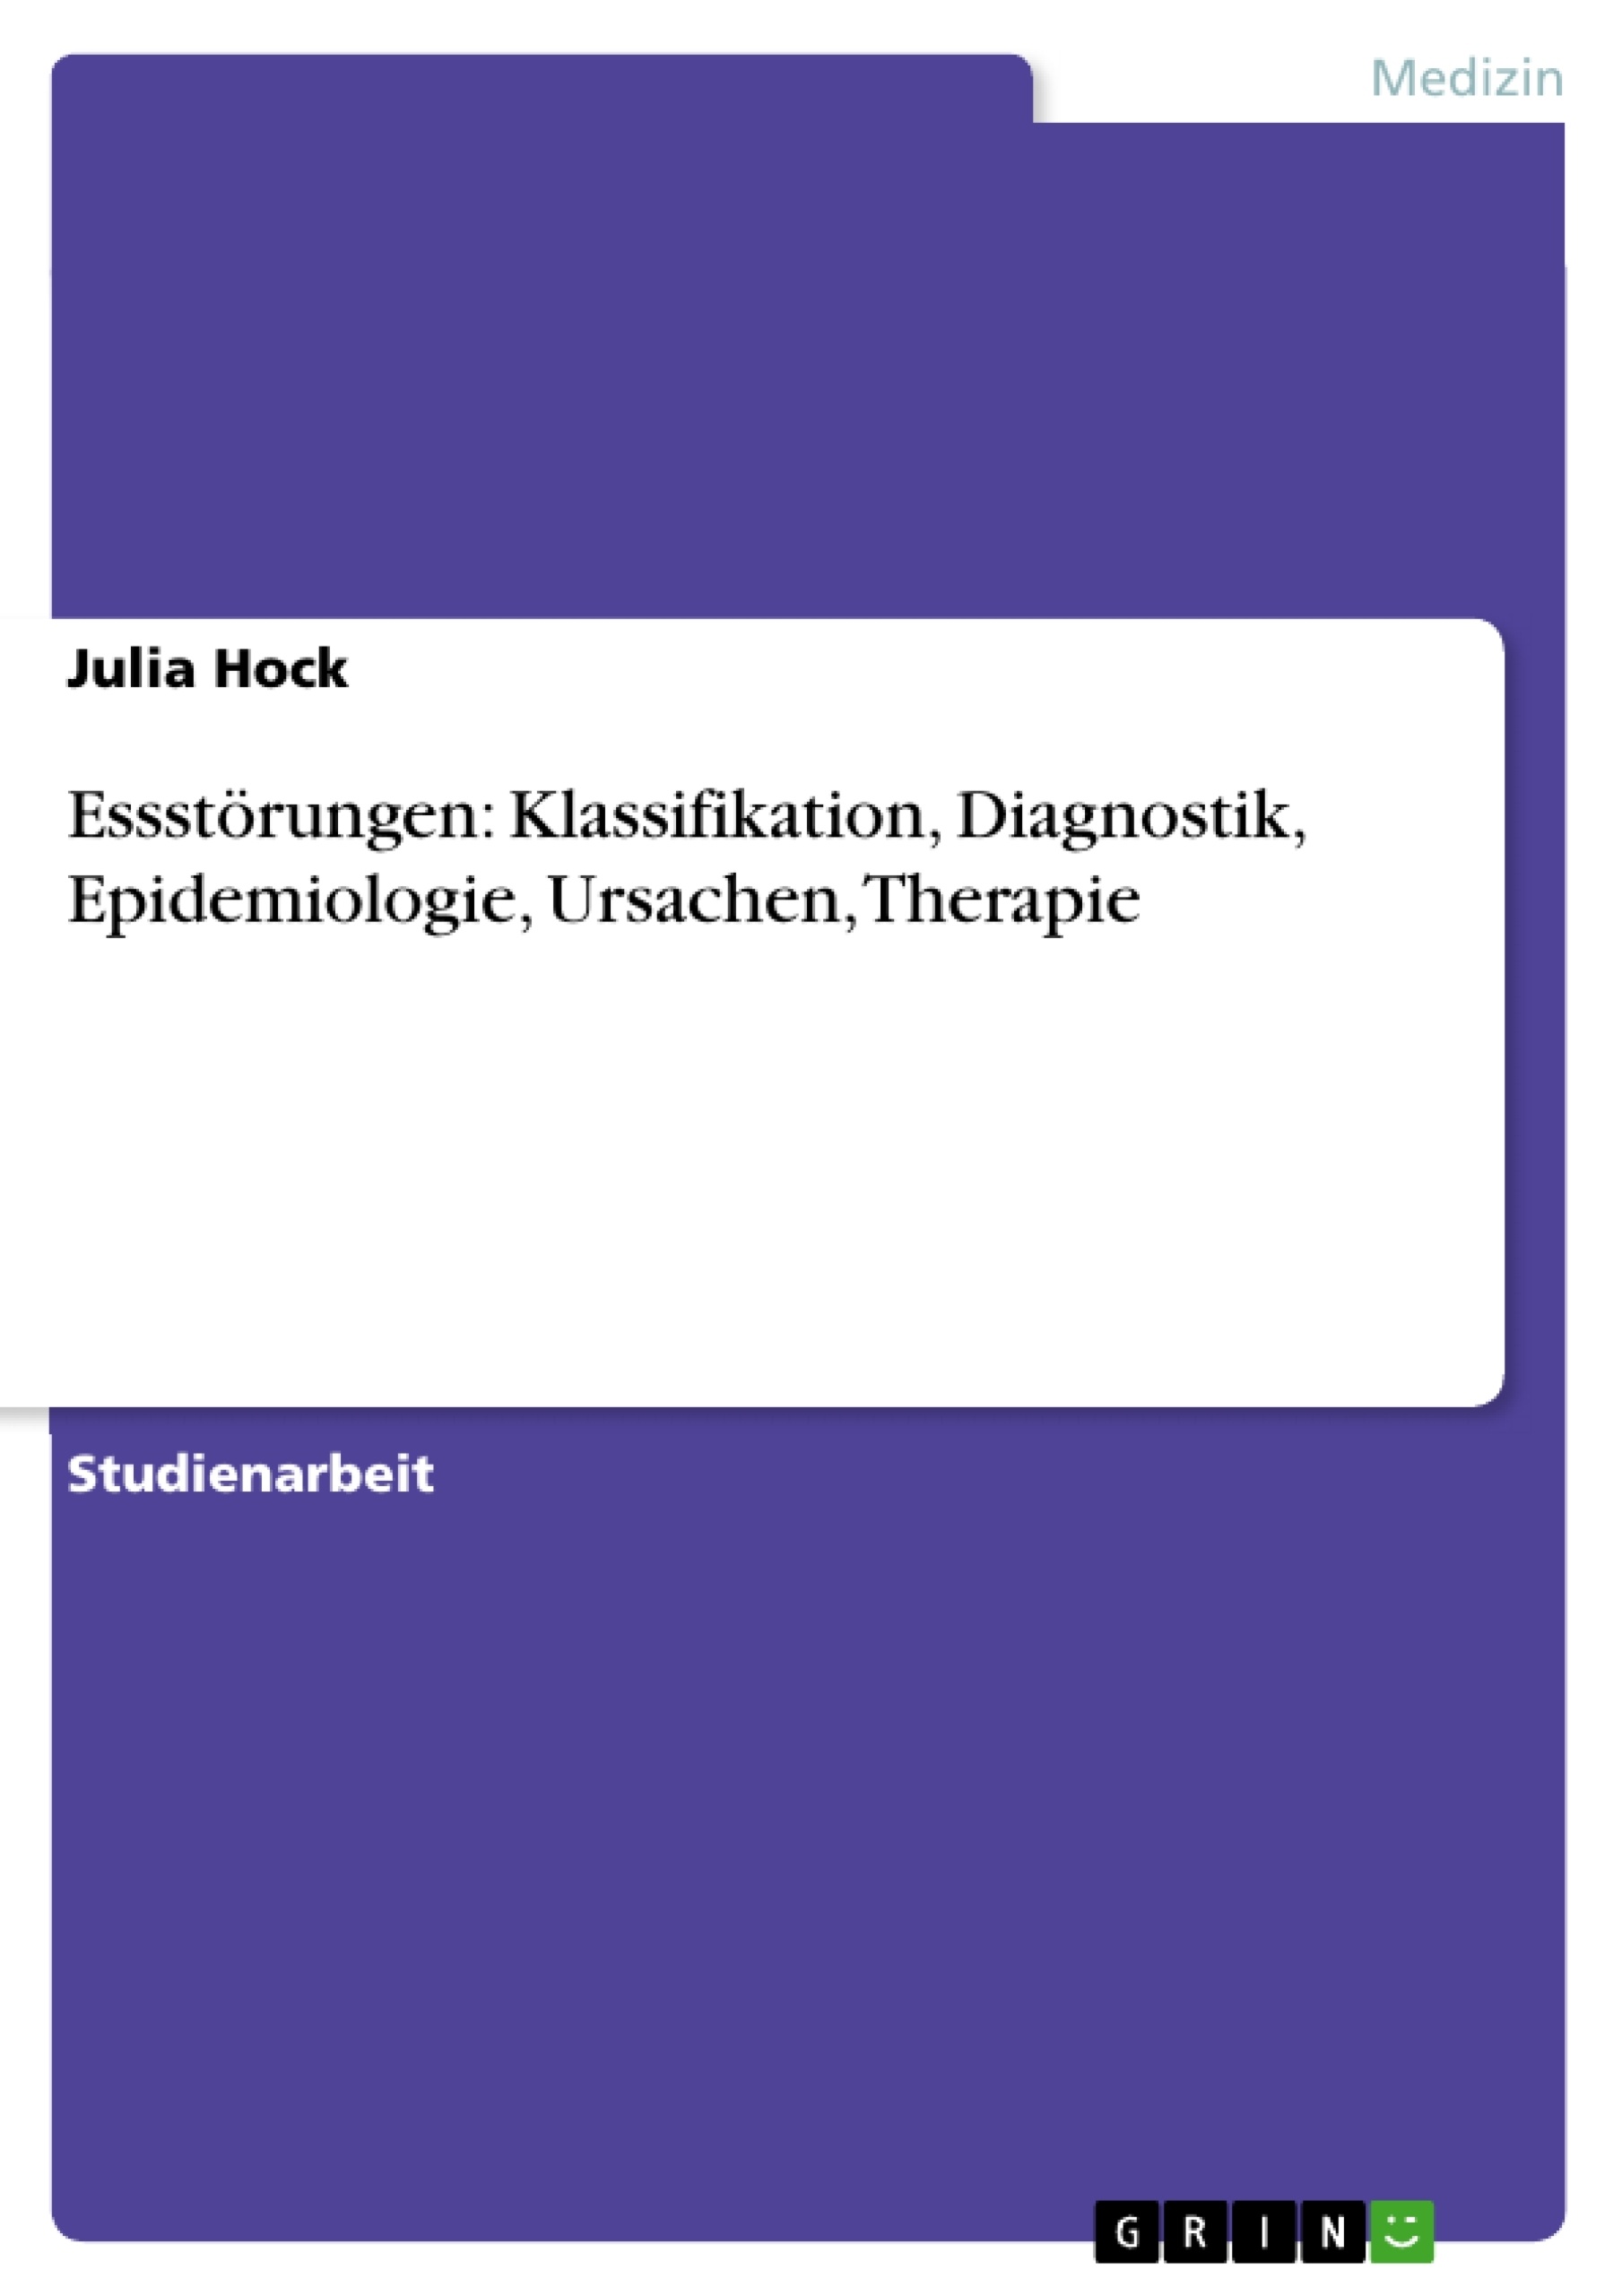 Title: Essstörungen: Klassifikation, Diagnostik, Epidemiologie, Ursachen, Therapie